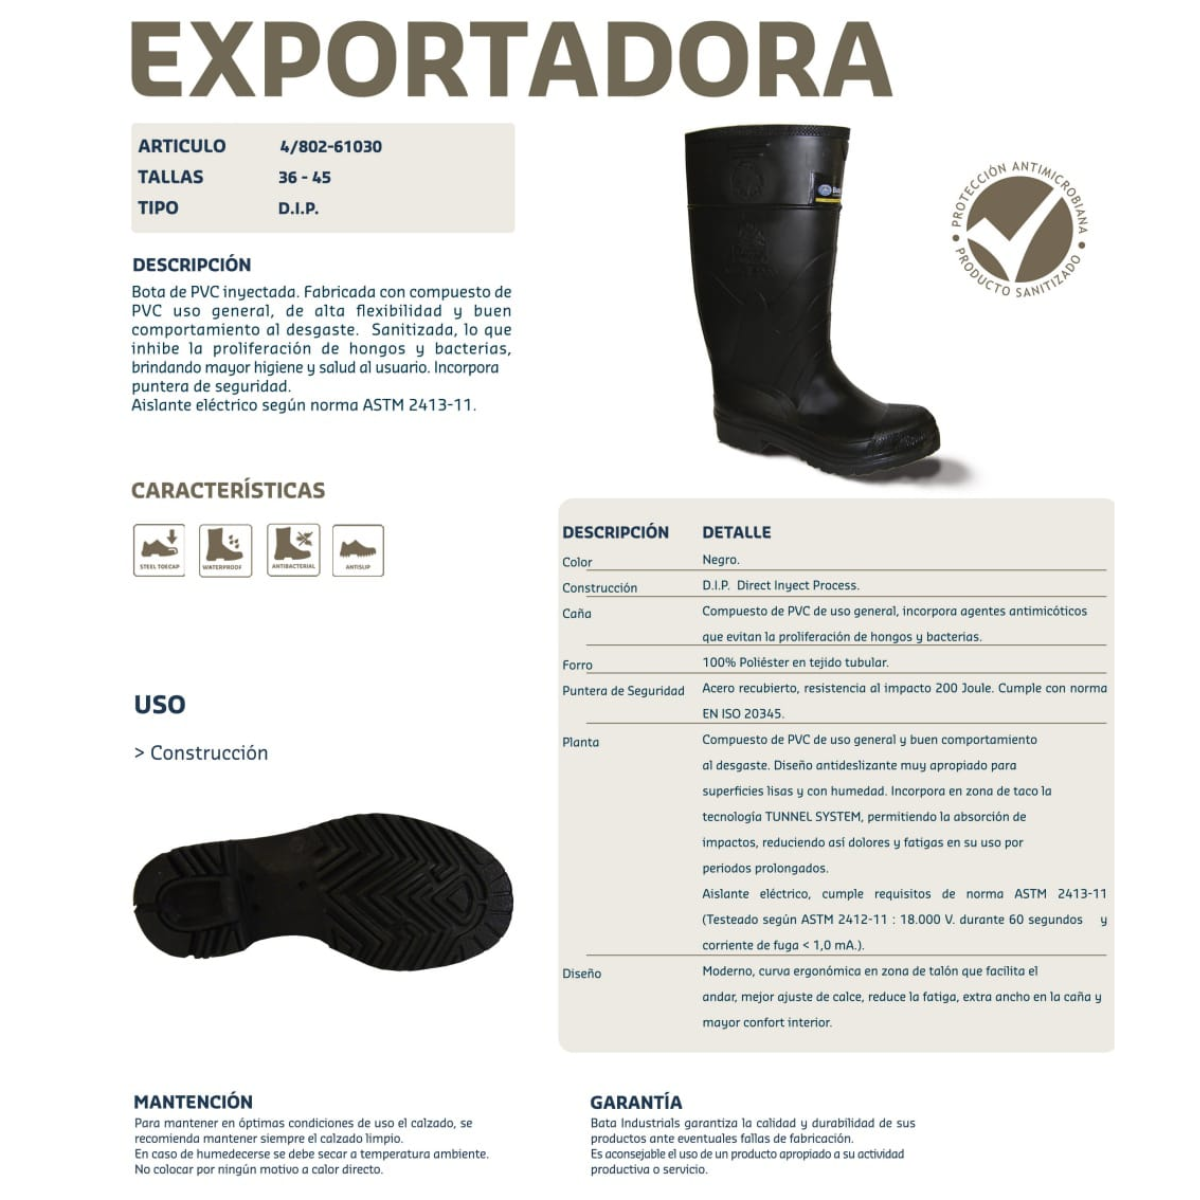 bota exportadora bata comprar en onlineshoppingcenterg Colombia centro de compras en linea osc 5